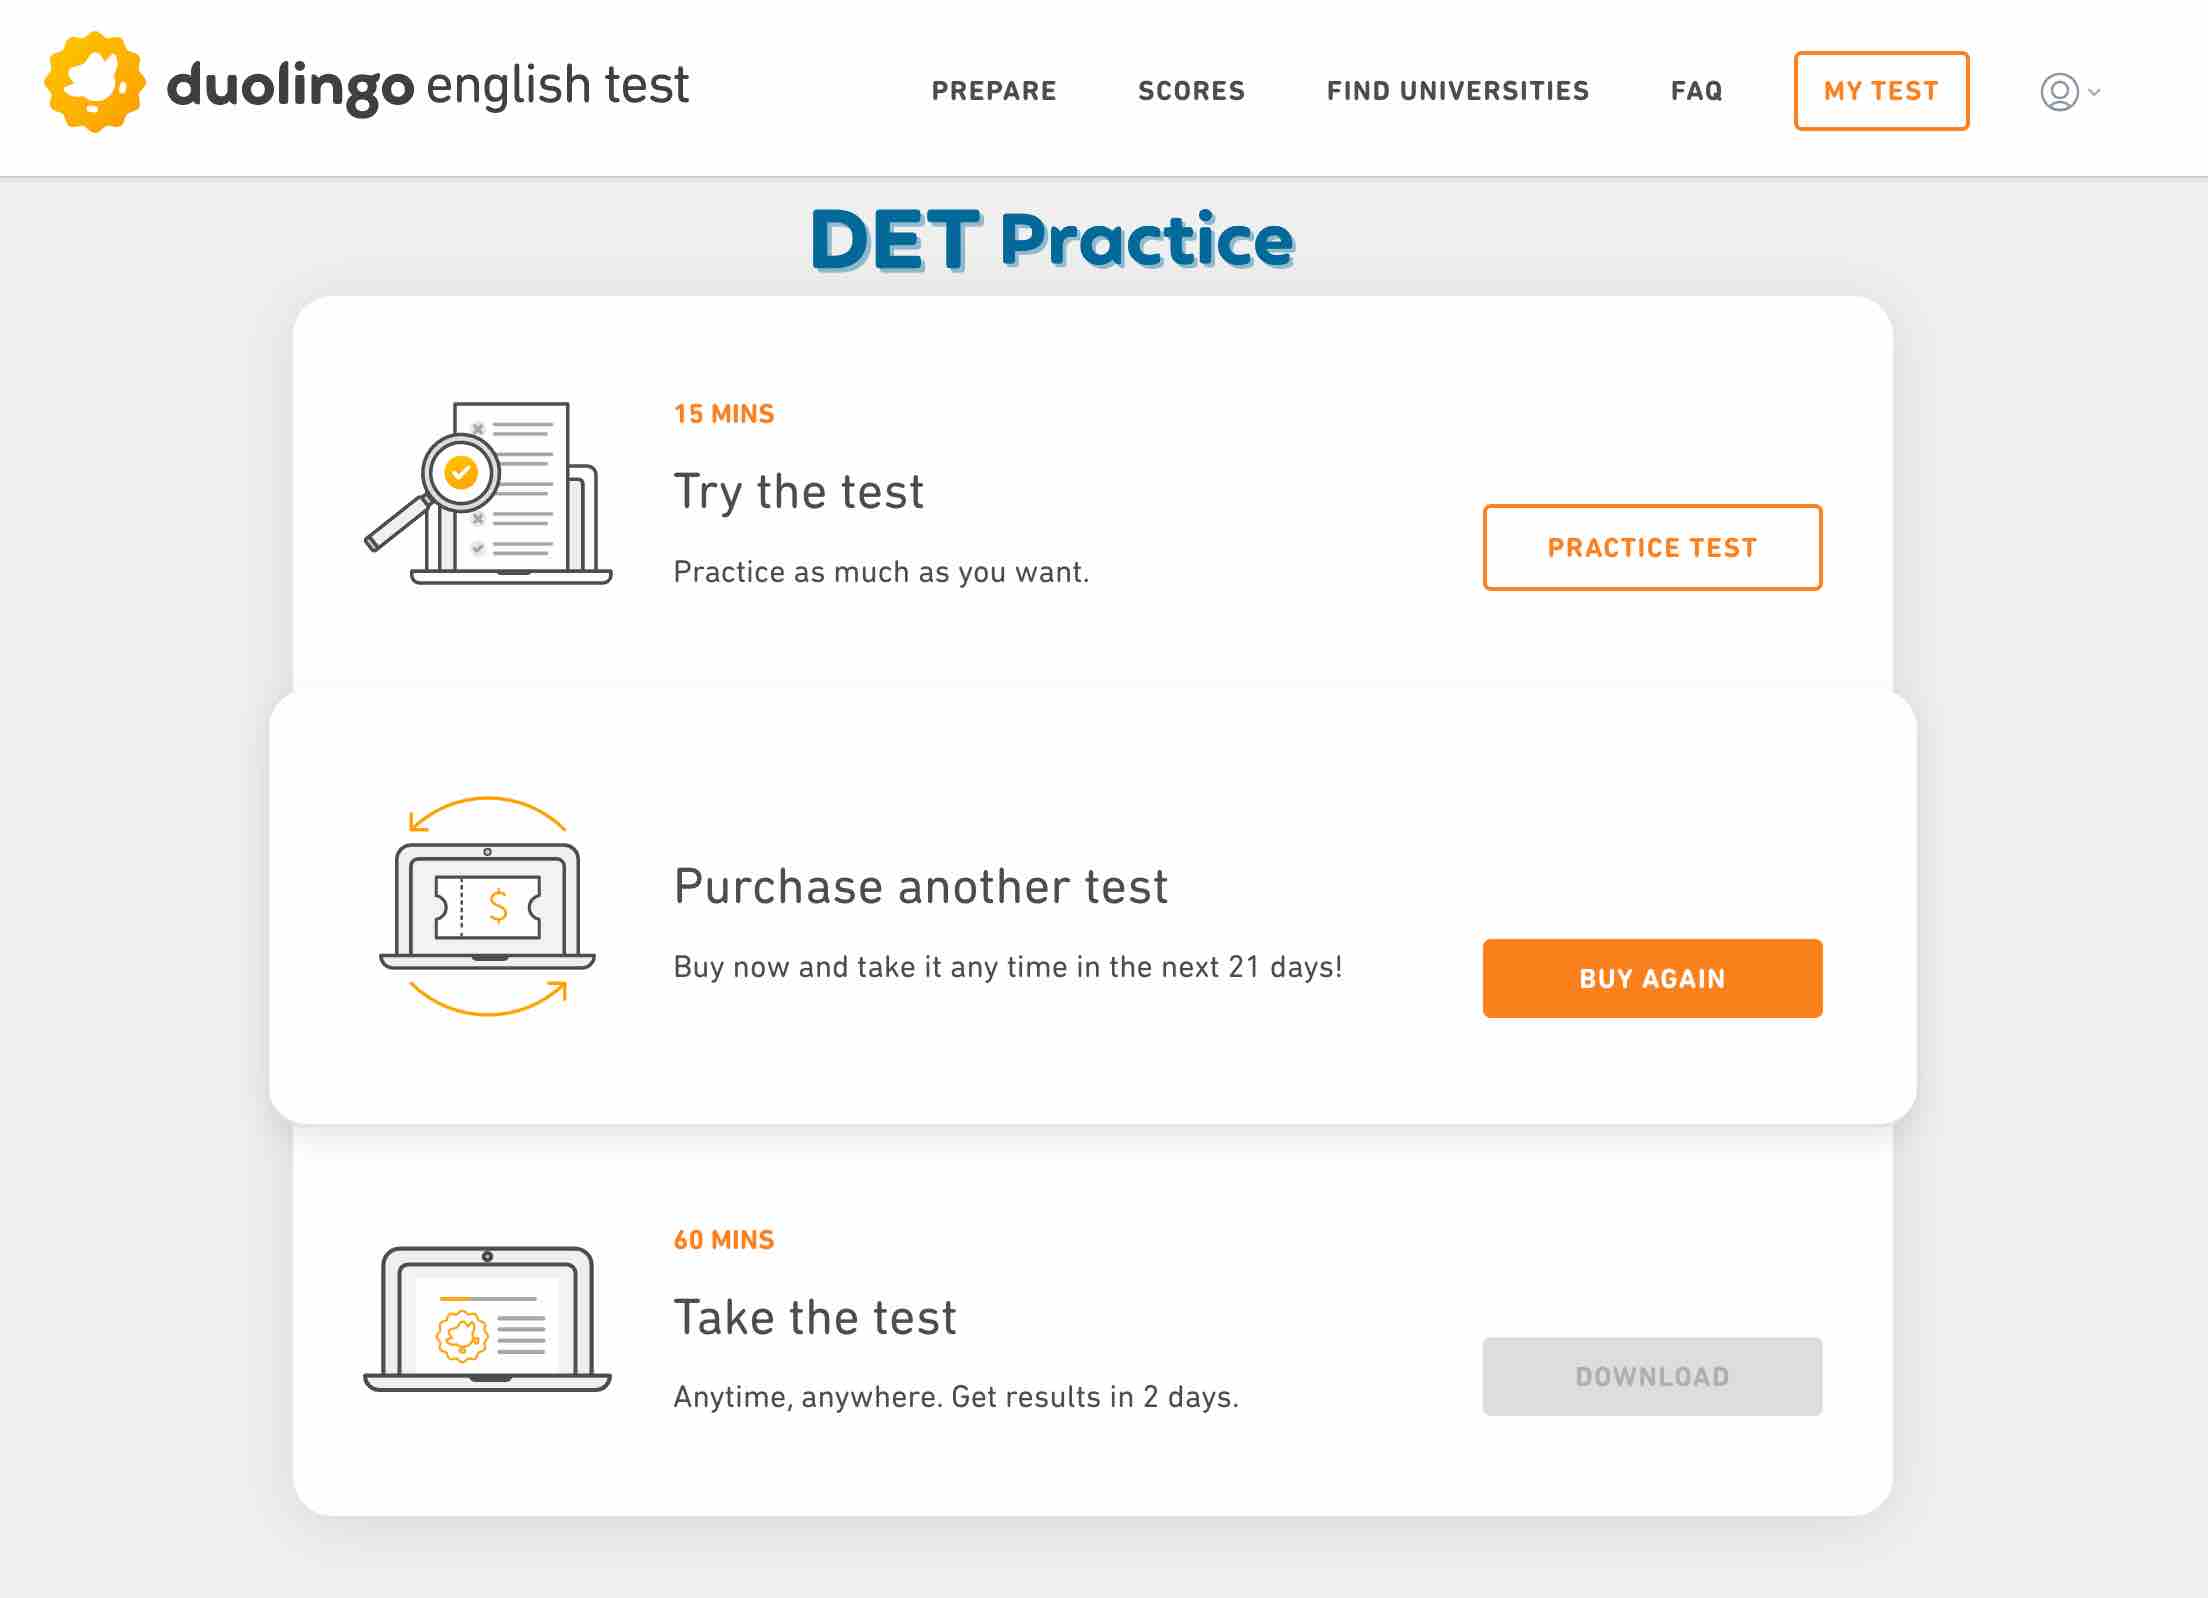 DET 15 practice tests, DET Practice Platform, DET Ready, Duolingo English Test, DET Preparation course